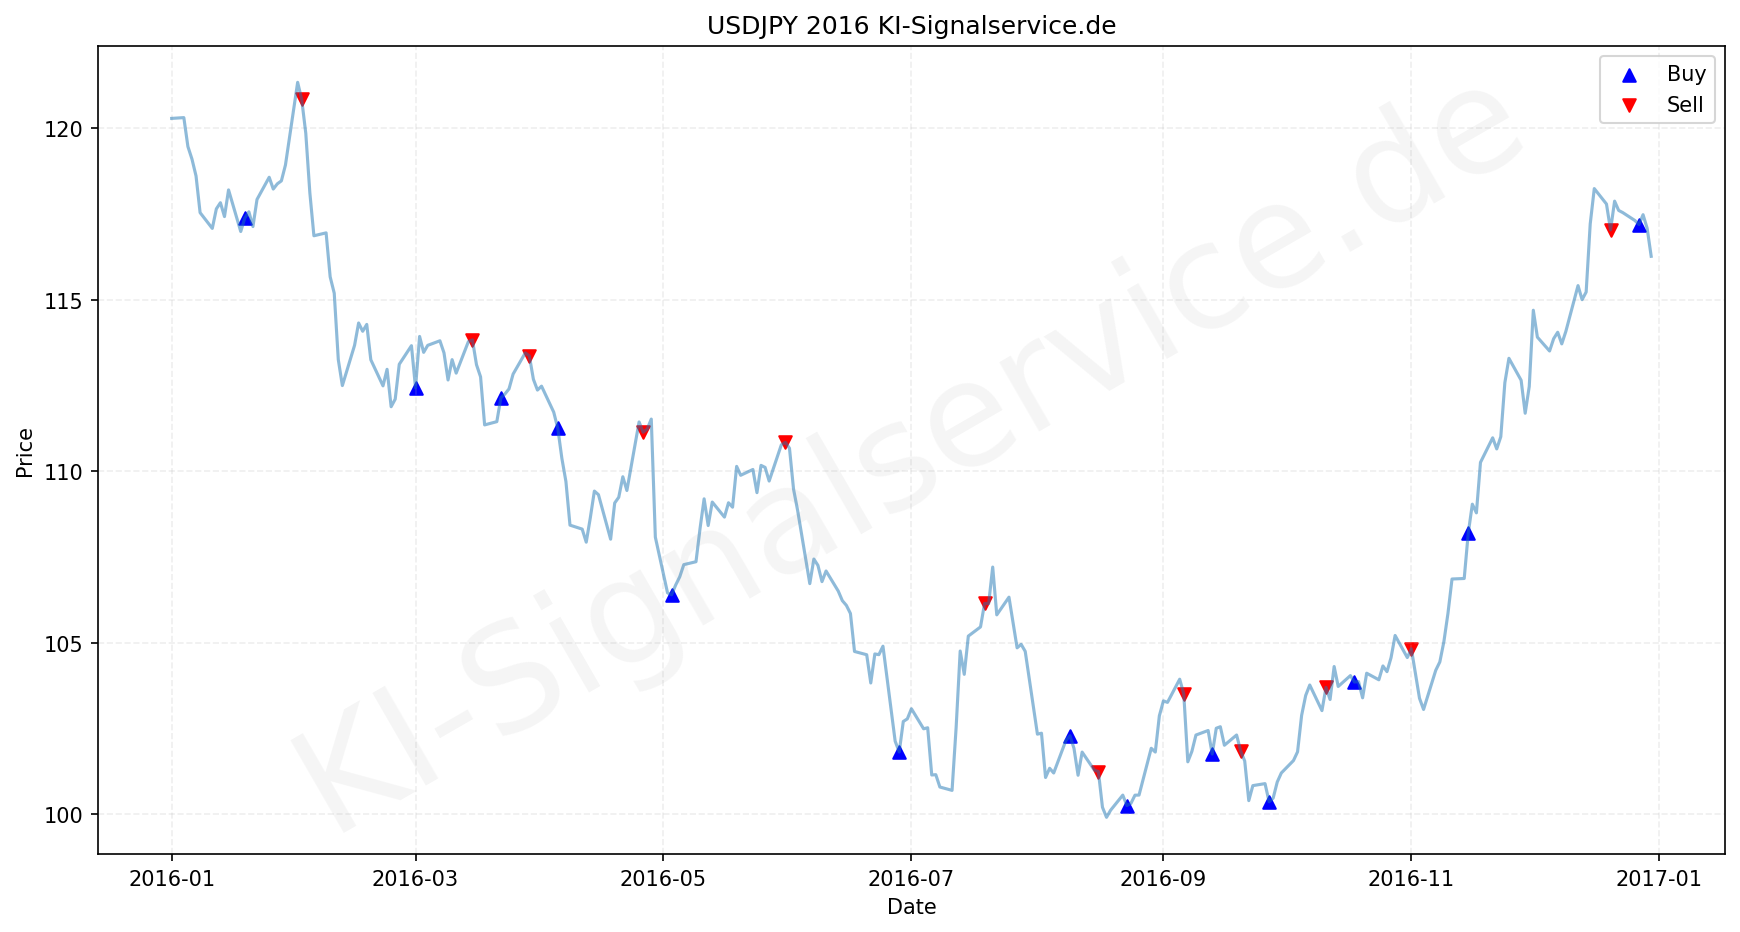 USDJPY Chart - KI Tradingsignale 2016